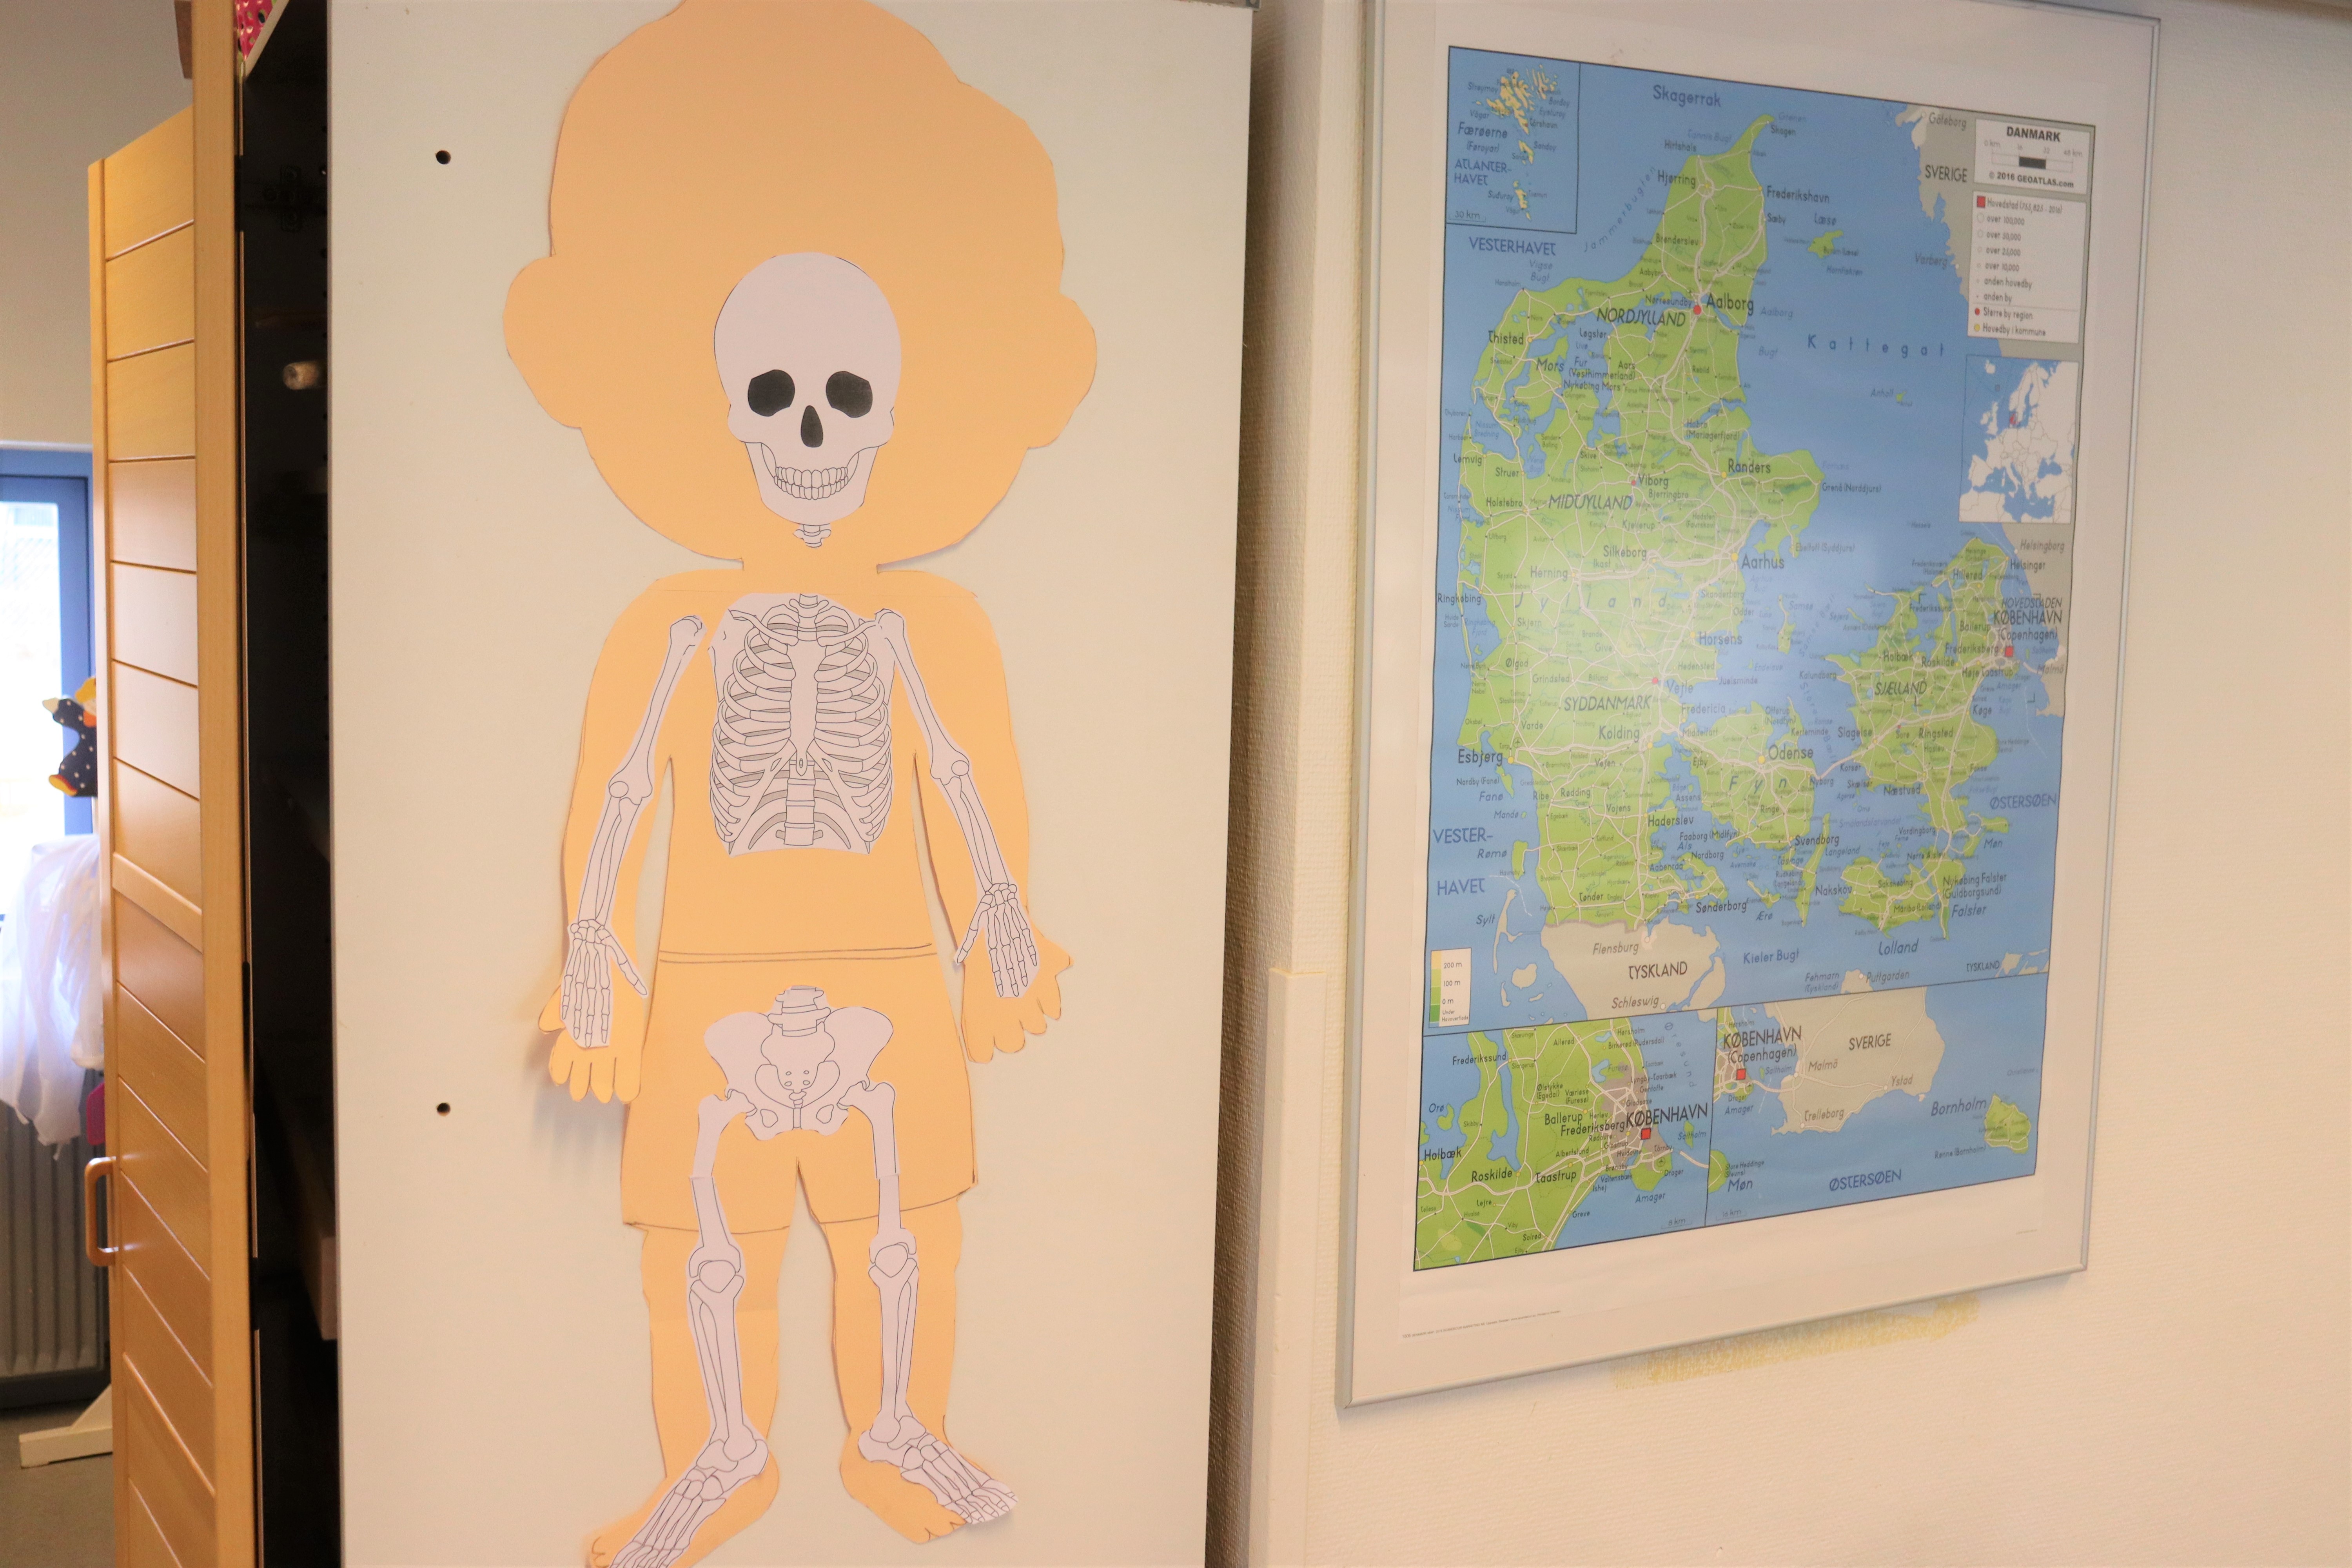 Børnehavens væg med hjemmelavet tegnet skelet og et Danmarks-kort